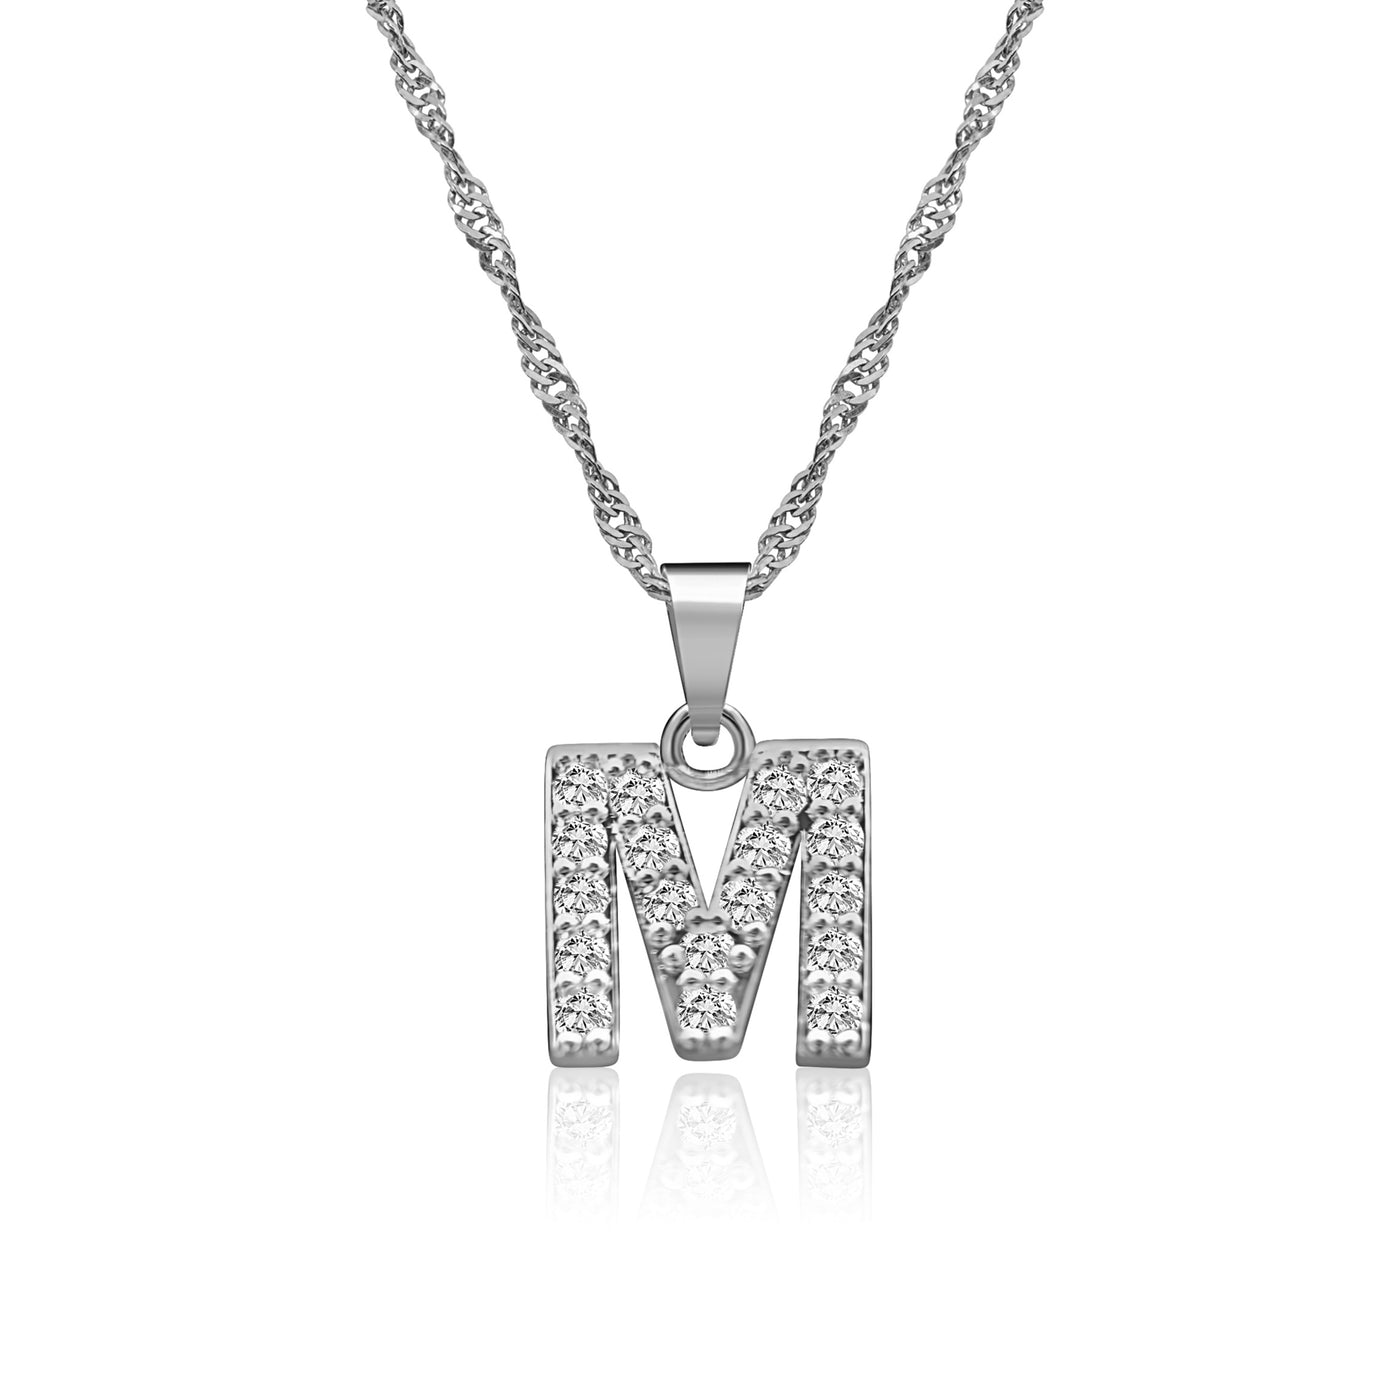 Halskette in Silber mit Zirkonia Buchstaben